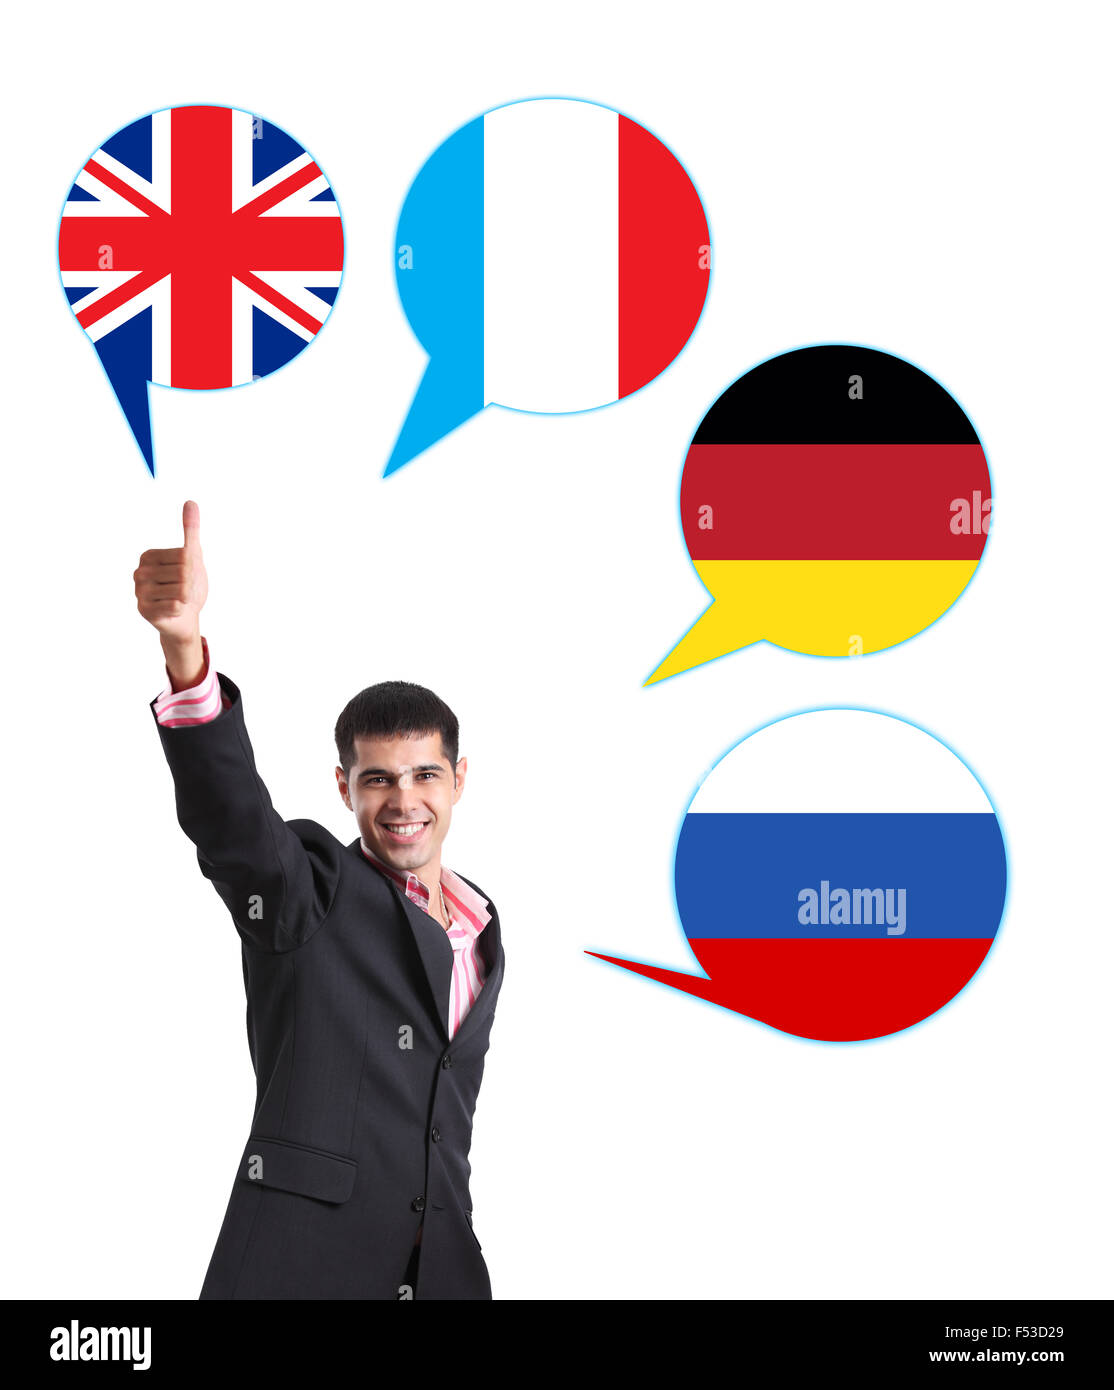 Junger Mann umgeben von Dialog Bläschen mit Länder-Fahnen. Deutschland, Großbritannien, Russland, Tschechien. Erlernen von Fremdsprachen c Stockfoto